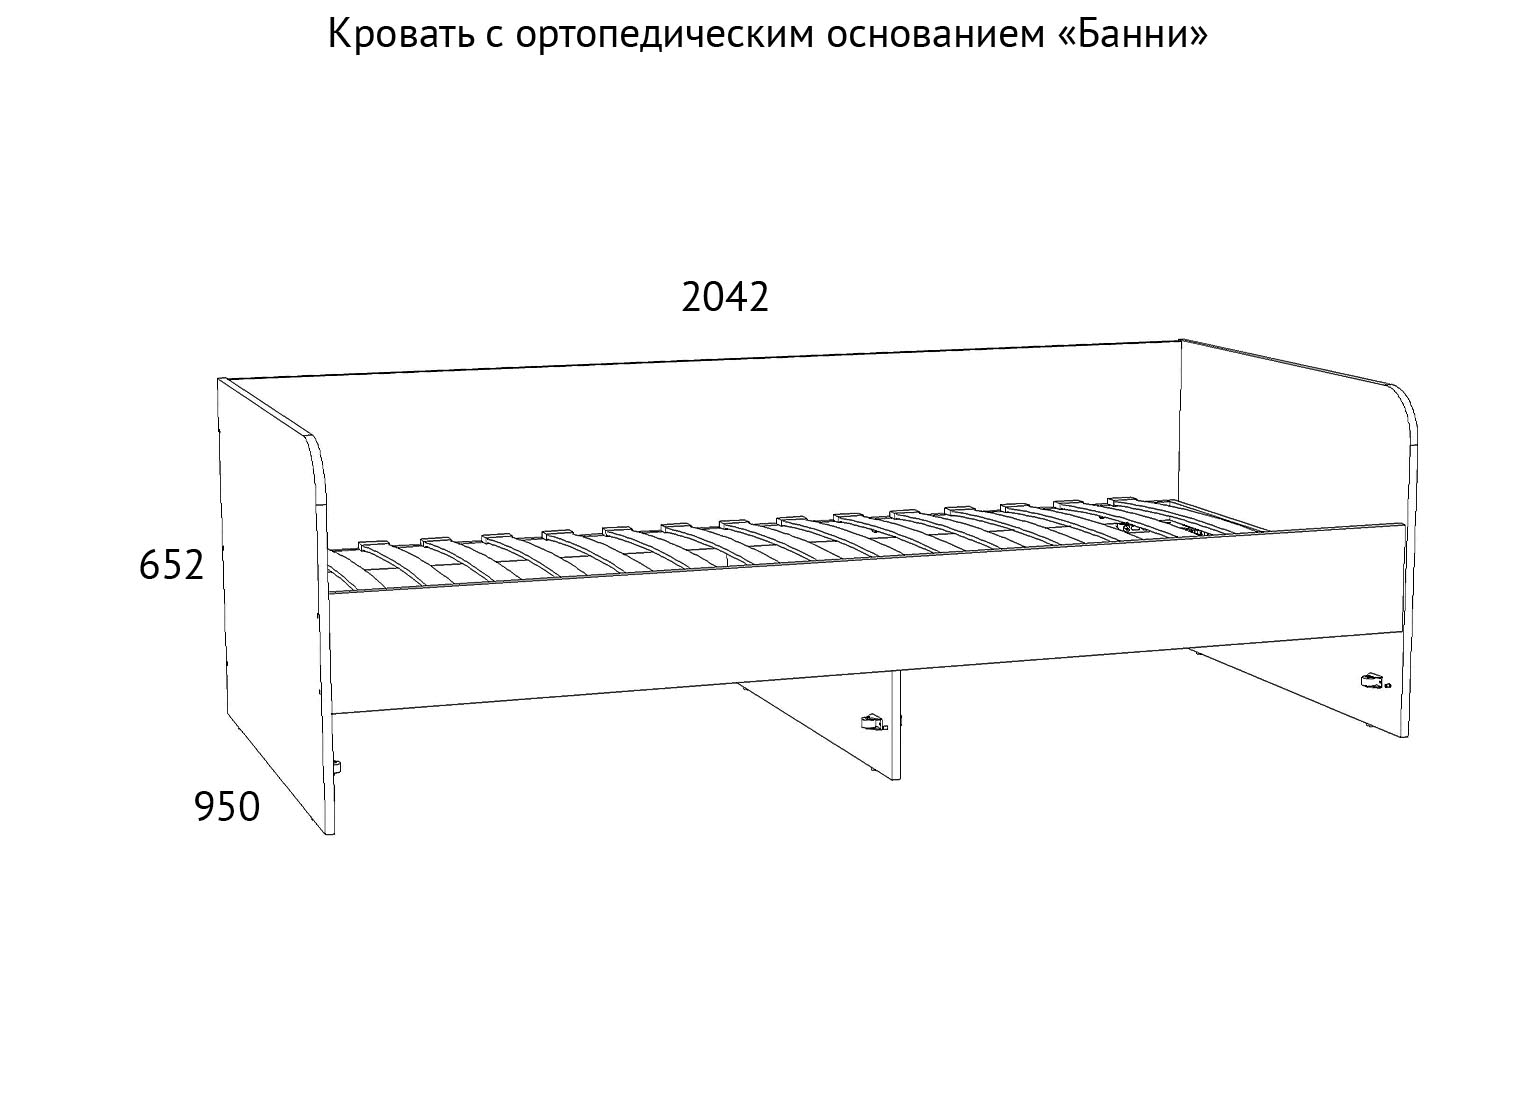 НМ 041.38 Кровать Банни схема Мебель Краснодар